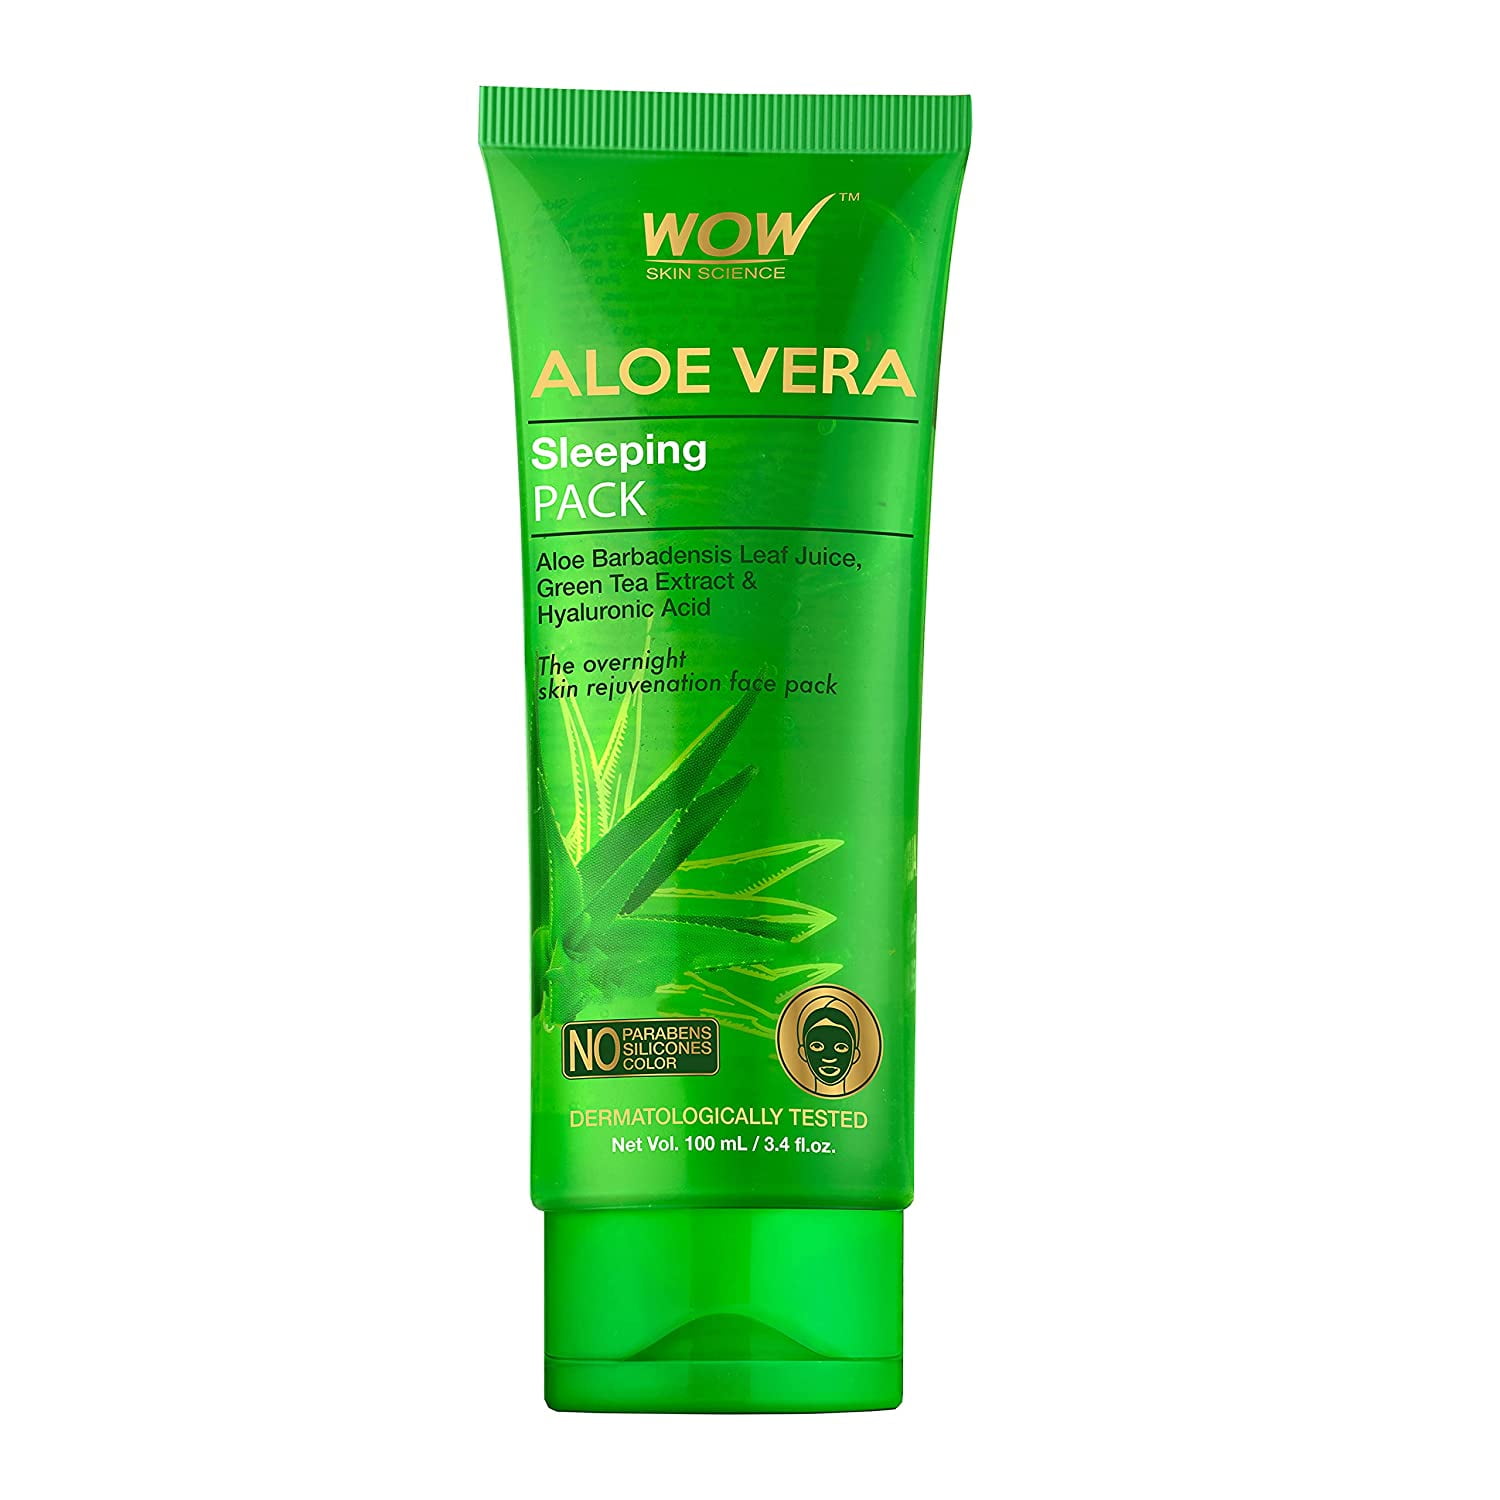 WOW Aloe Vera Sleeping - Gel for Face Wash Hydration - 100ml - Walmart.com